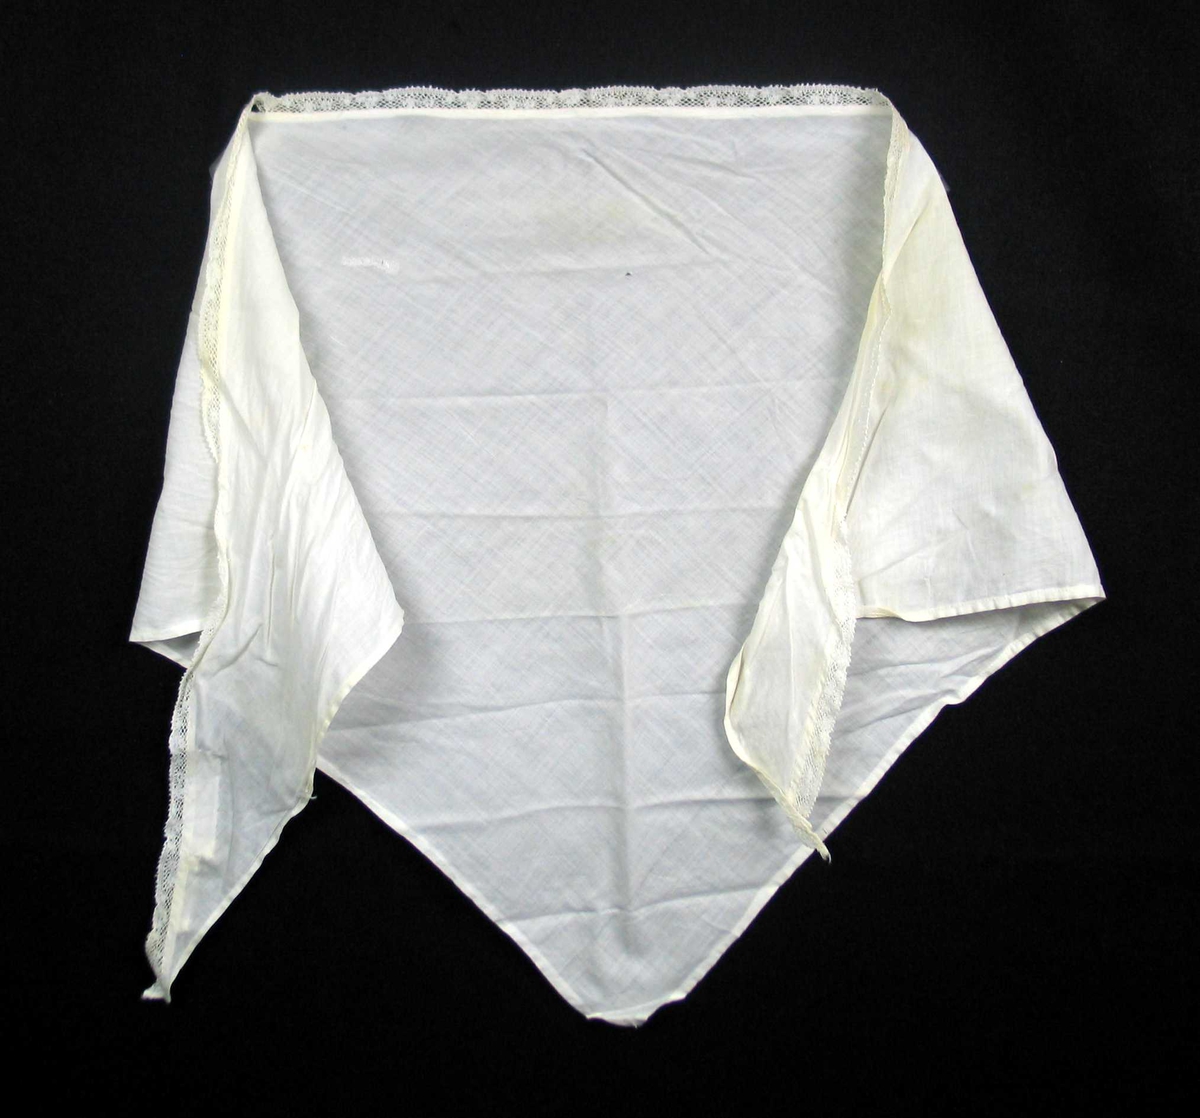 Hvitt trekantet tørkle i to-skaft vevd bomull med påsydd kniplingsblonde. Blonden er antatt maskinvevd. Tørkledet er maskinfaldet på tre sider